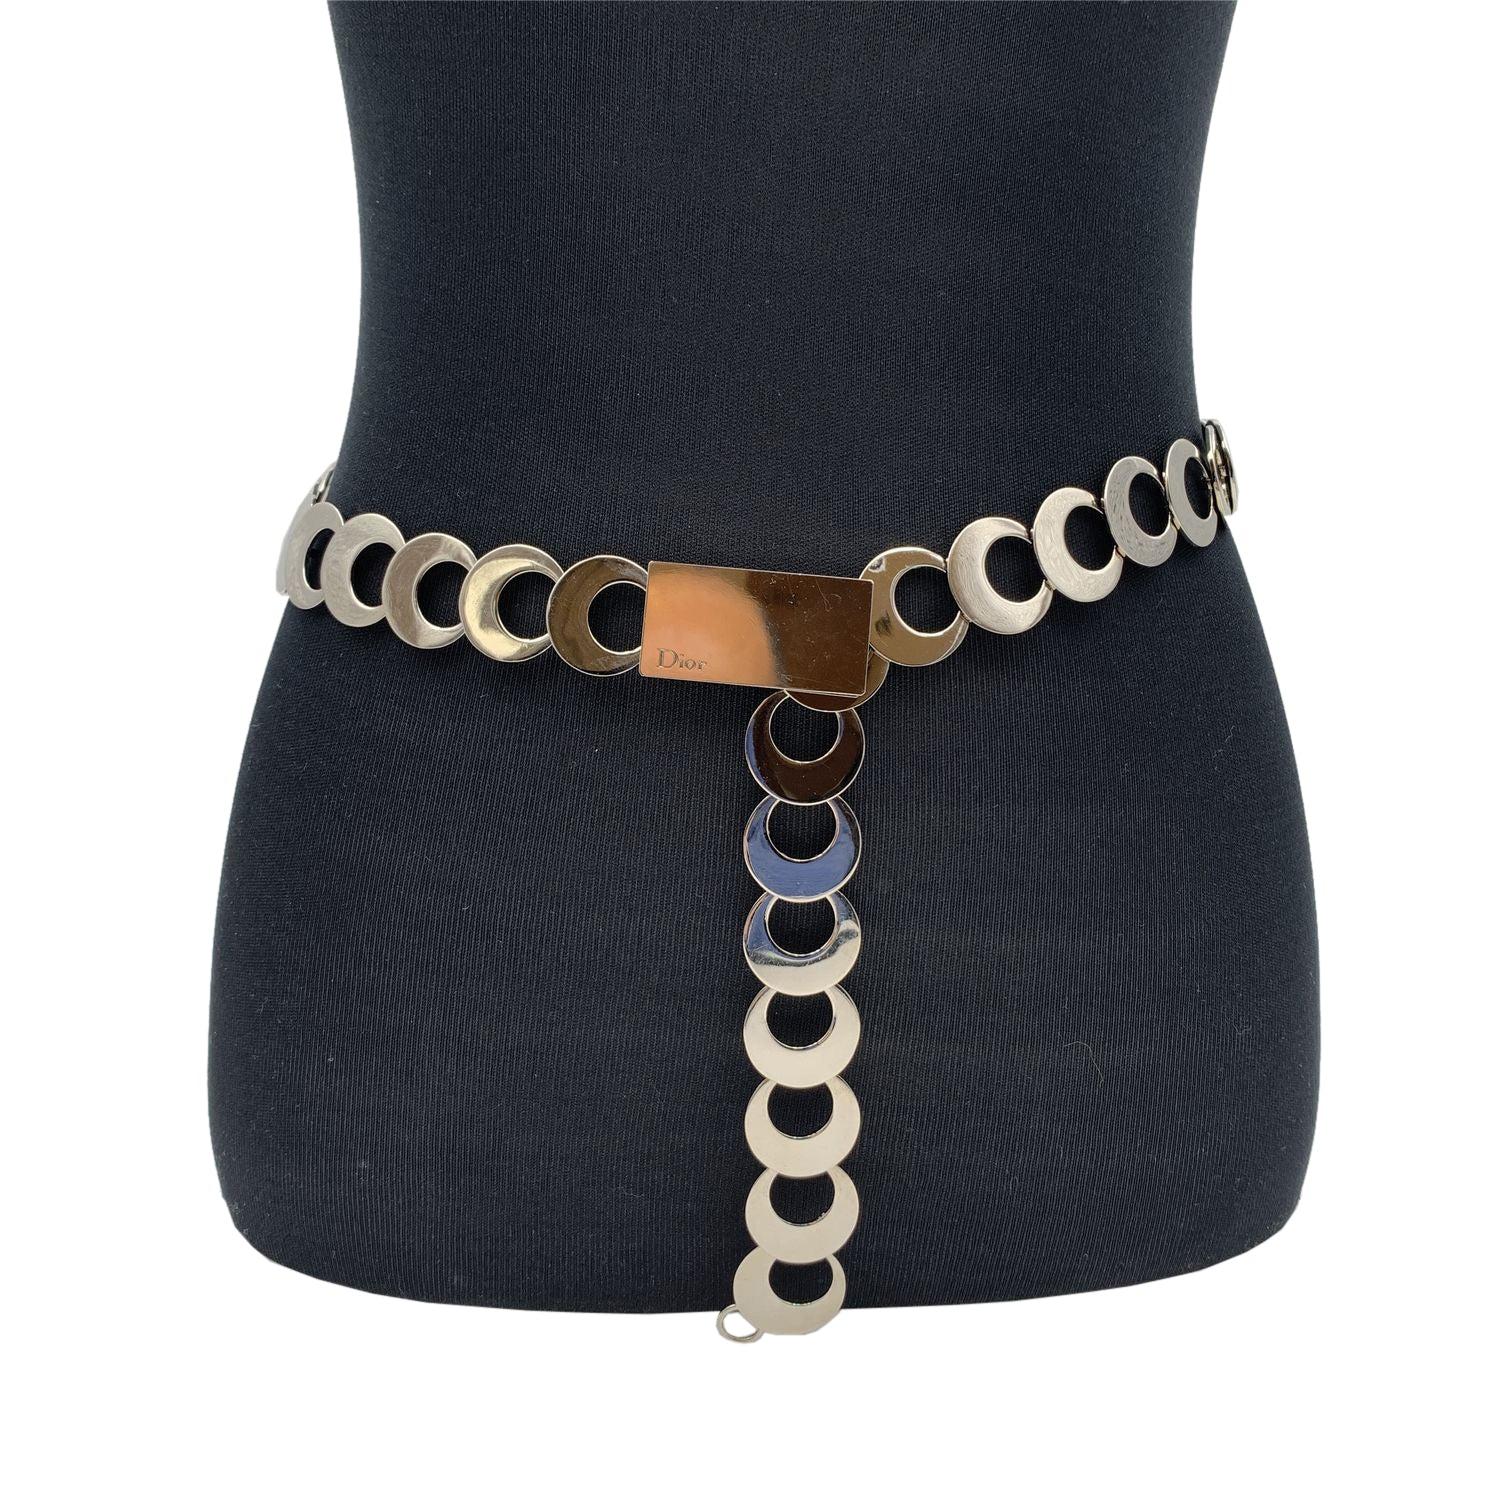 Chanel Vintage Silber Metall Kette Gürtel . Er ist sehr vielseitig und vervollständigt jeden Look (Sie können ihn als Halskette oder als Gürtel verwenden). Es ist mit einer silbernen Metallkette versehen. Hakenverschluss. Gesamtlänge: 36 Zoll - 91,4